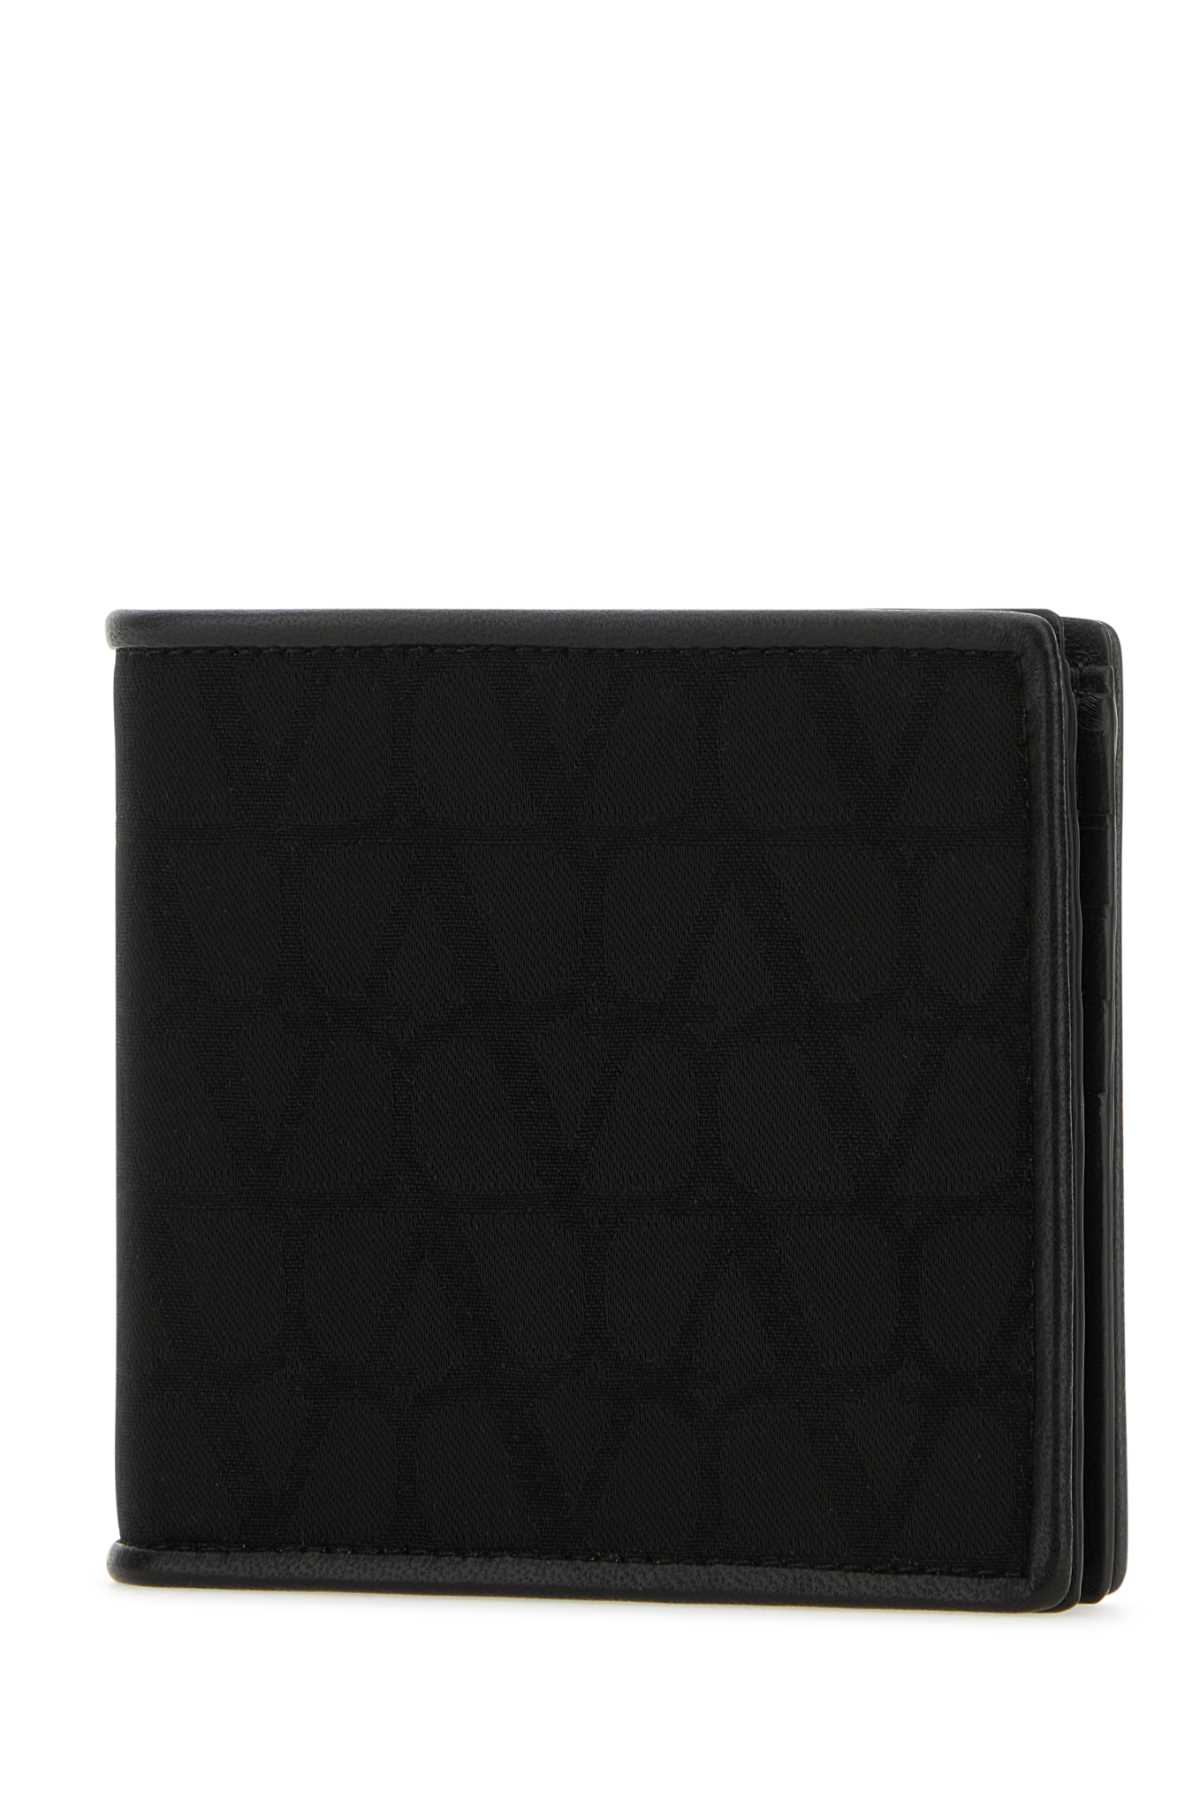 Valentino Garavani Black Fabric Toile Iconographe Wallet In Nero